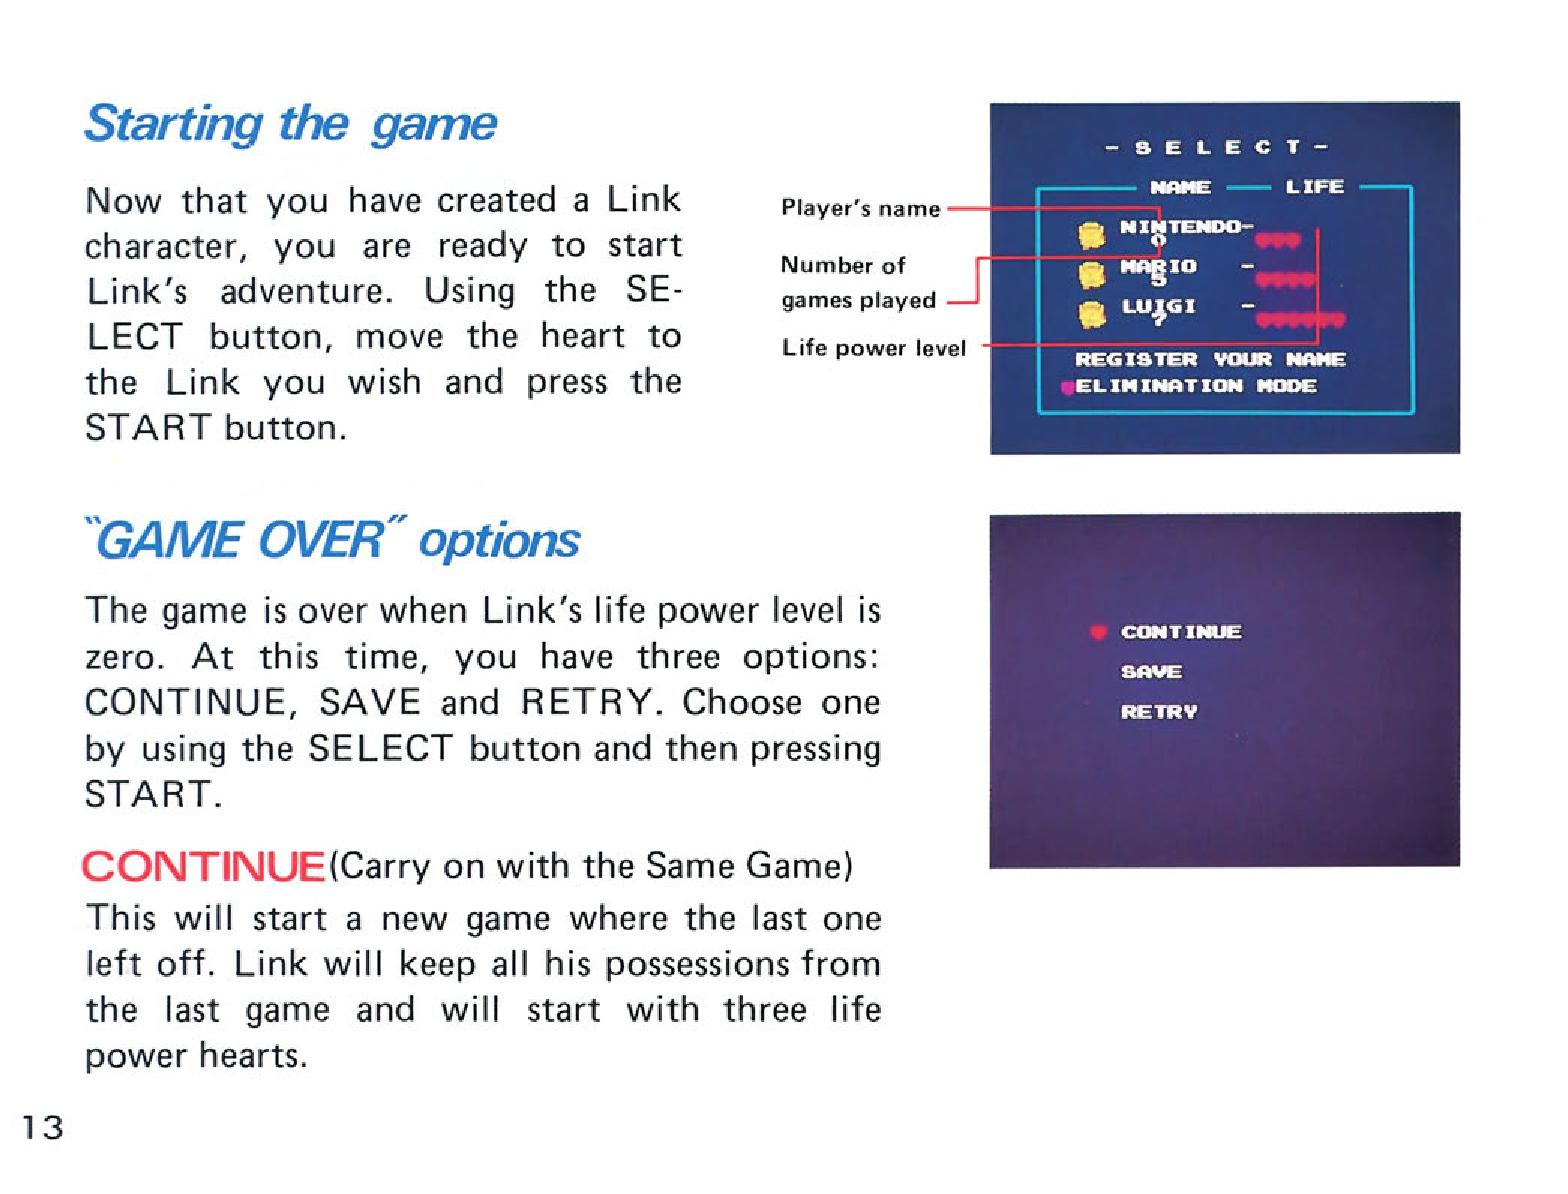 Zelda 1 (the legend of zelda) : Manual of nes version